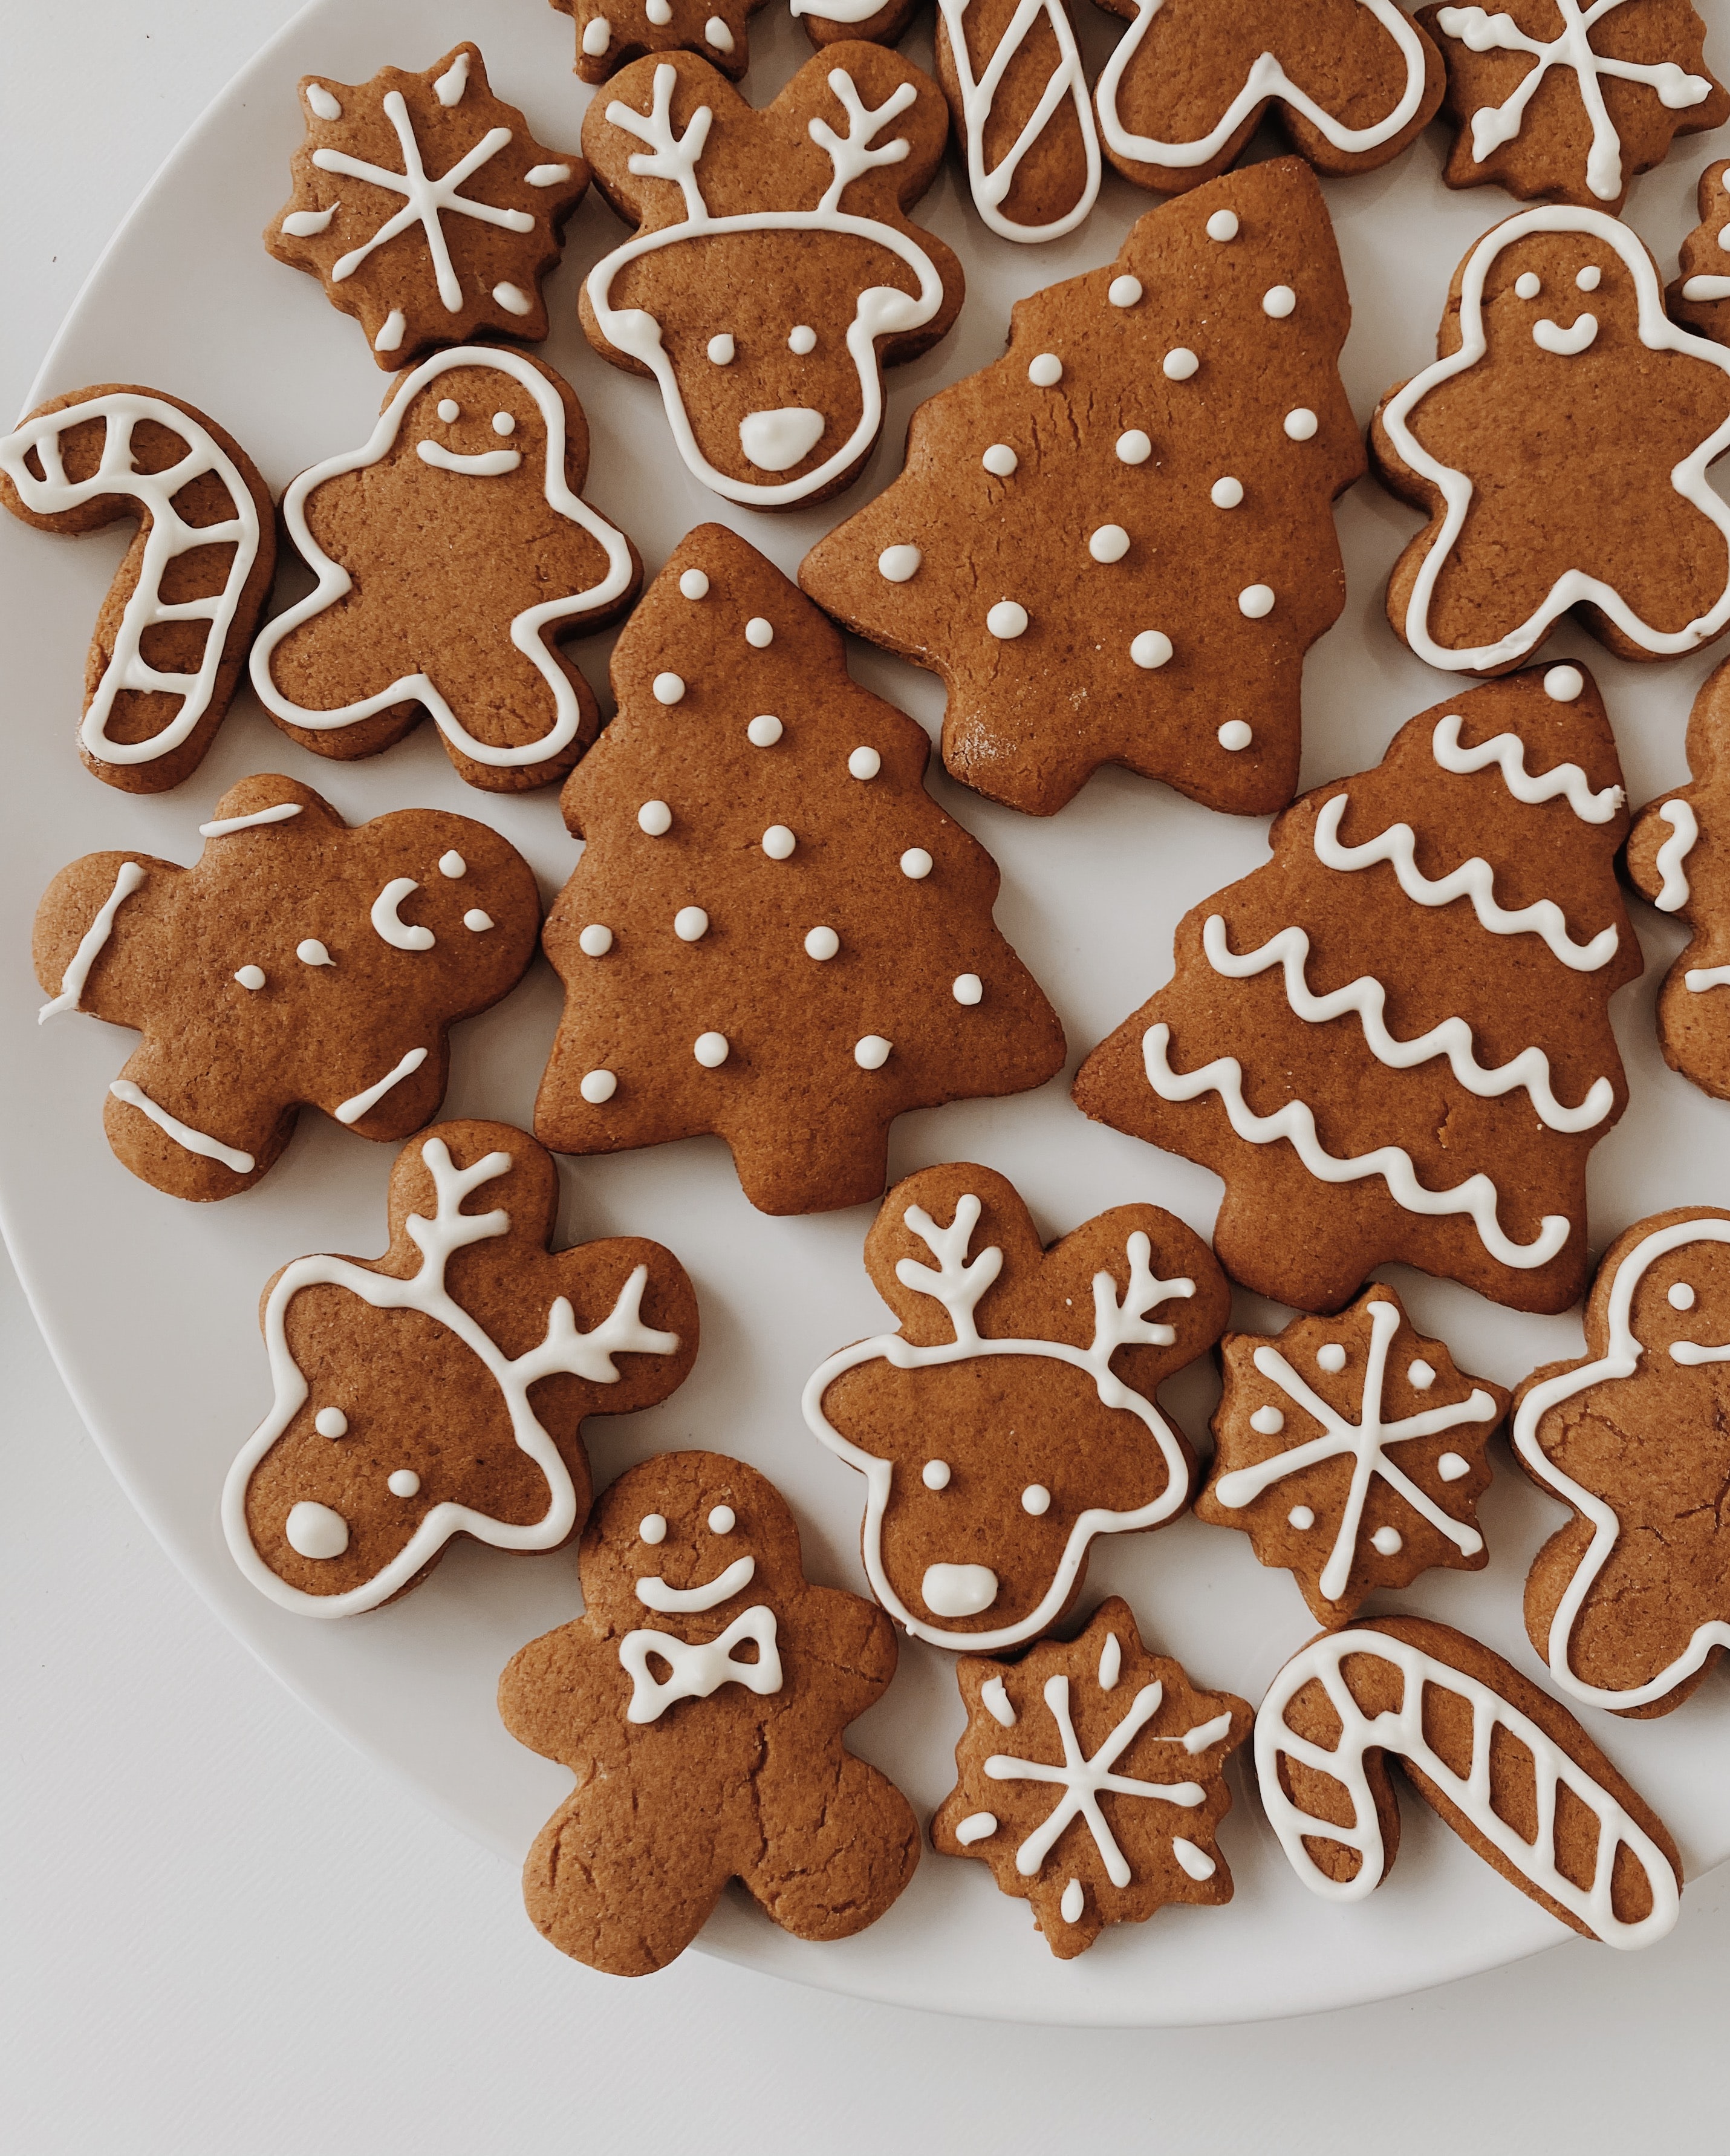 Weekly Tip - Healthy Christmas Cookies